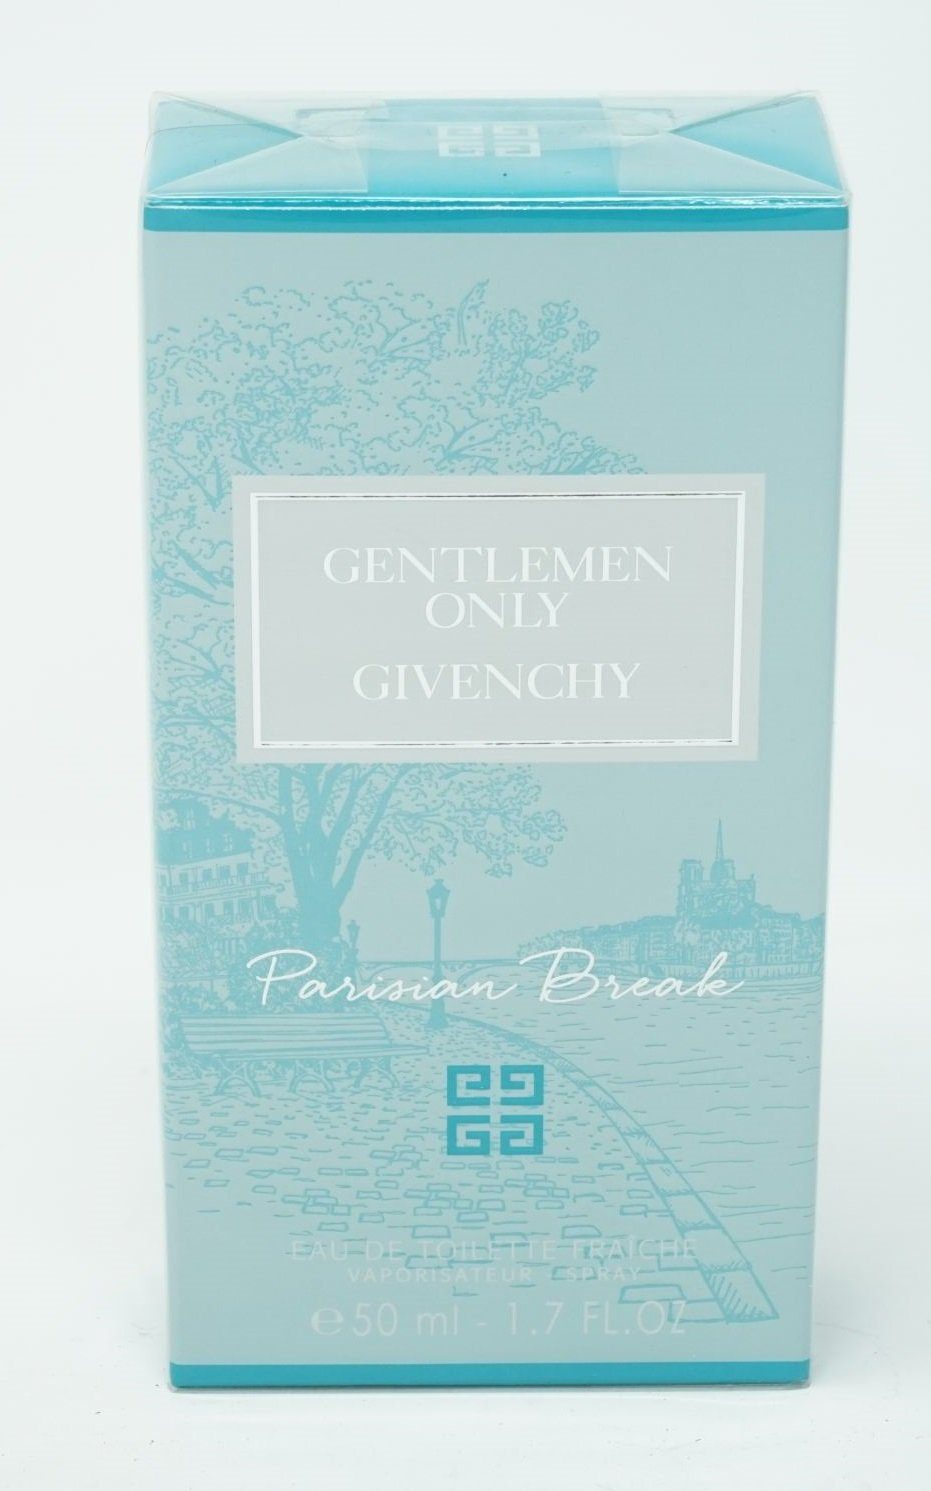 Givenchy de Break Toilette ml Eau Spray Parisian Gentleman Eau GIVENCHY Toilette de 50 Only